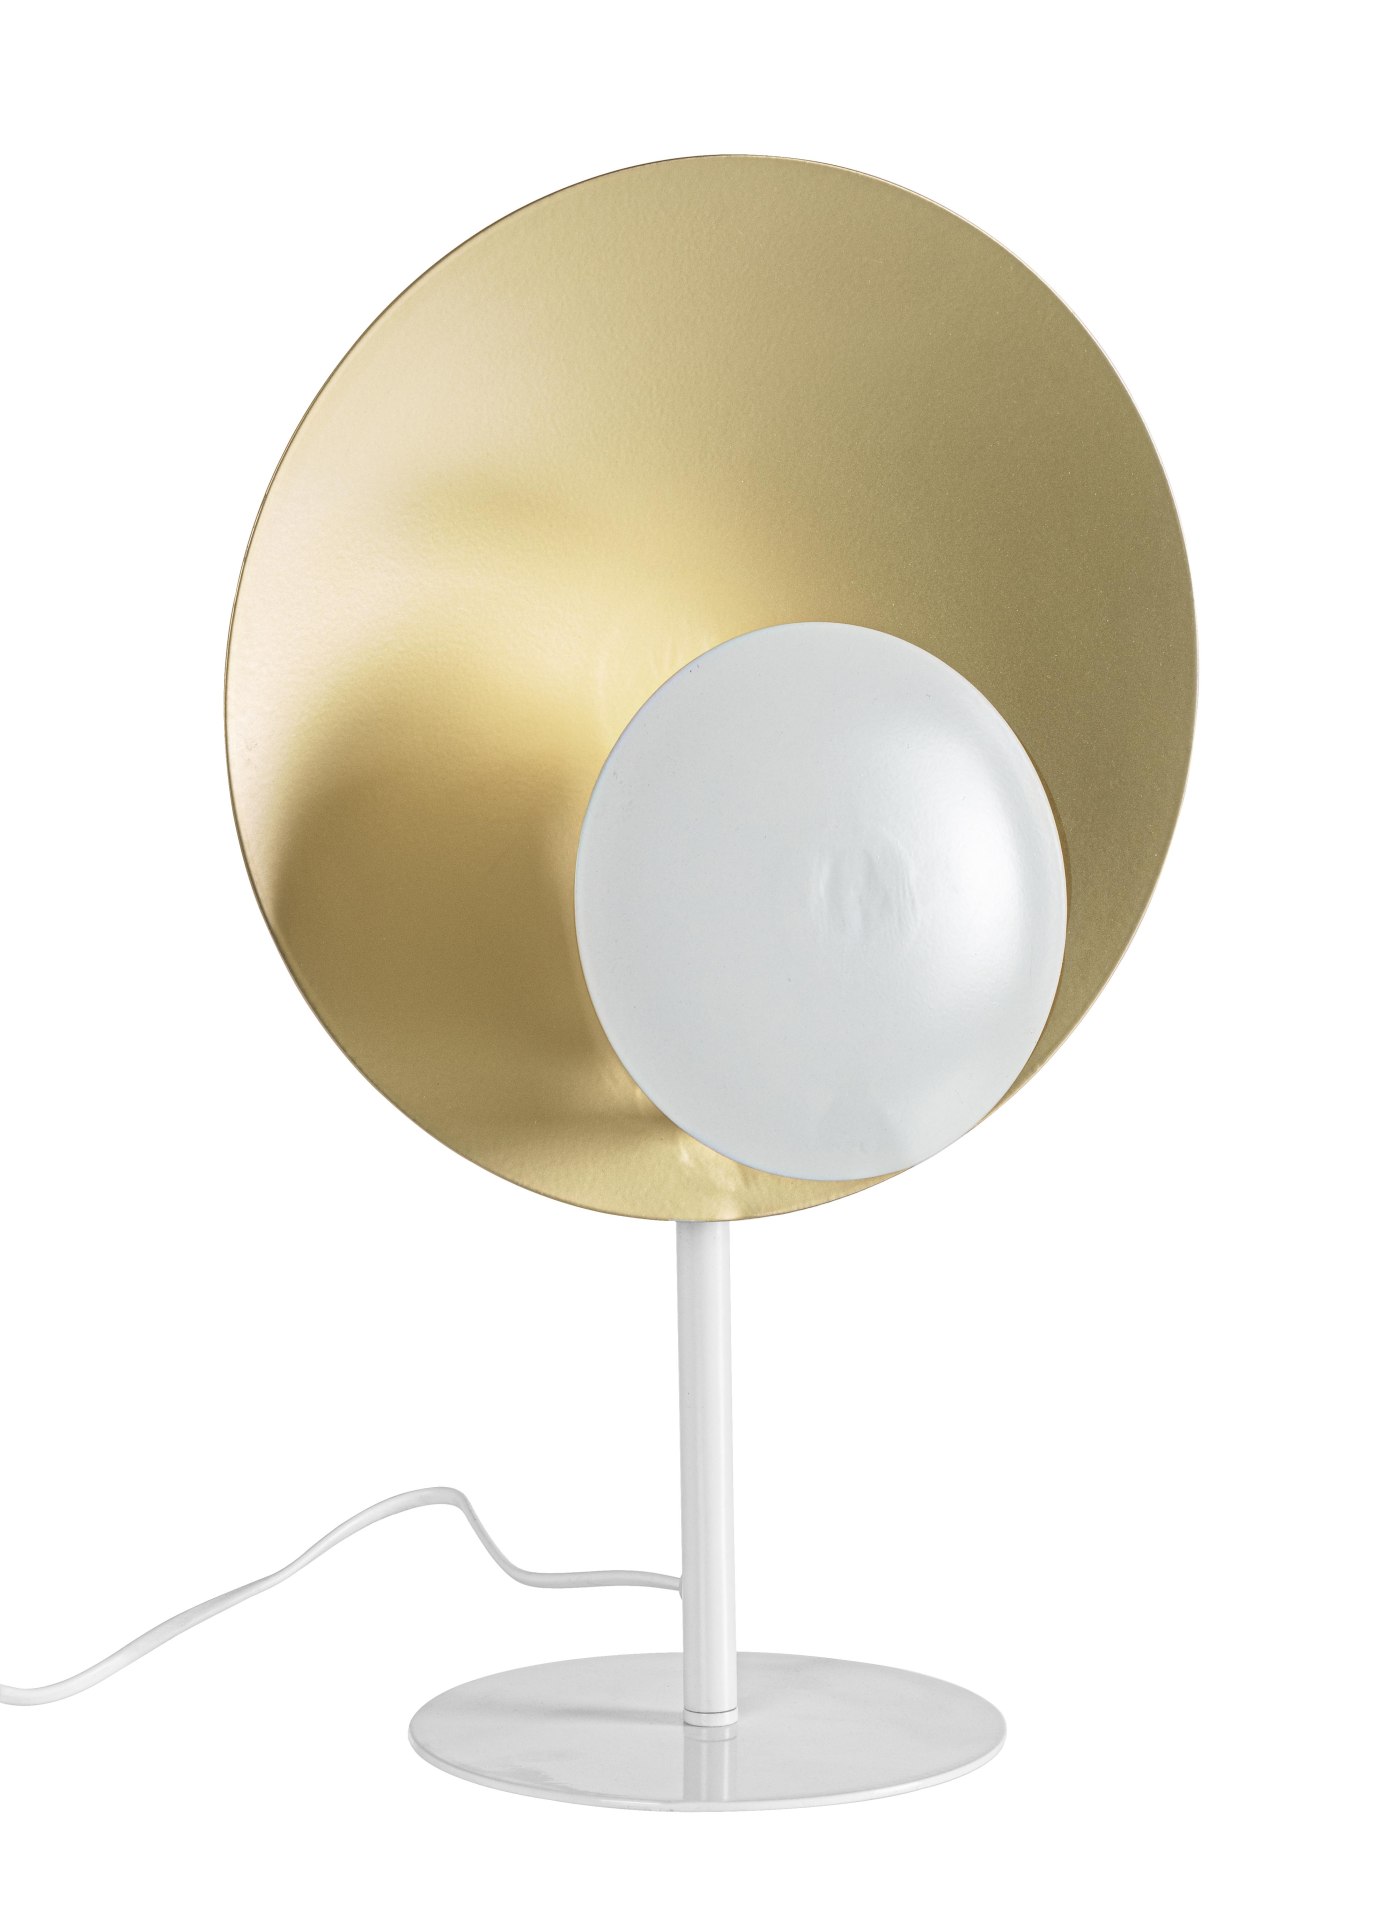 Die Tischleuchte Design überzeugt mit ihrem modernen Design. Gefertigt wurde sie aus Metall, welches einen weißen Farbton besitzt. Der Lampenschirm ist auch aus Metall und hat eine goldene Farbe. Die Lampe besitzt eine Höhe von 46 cm.